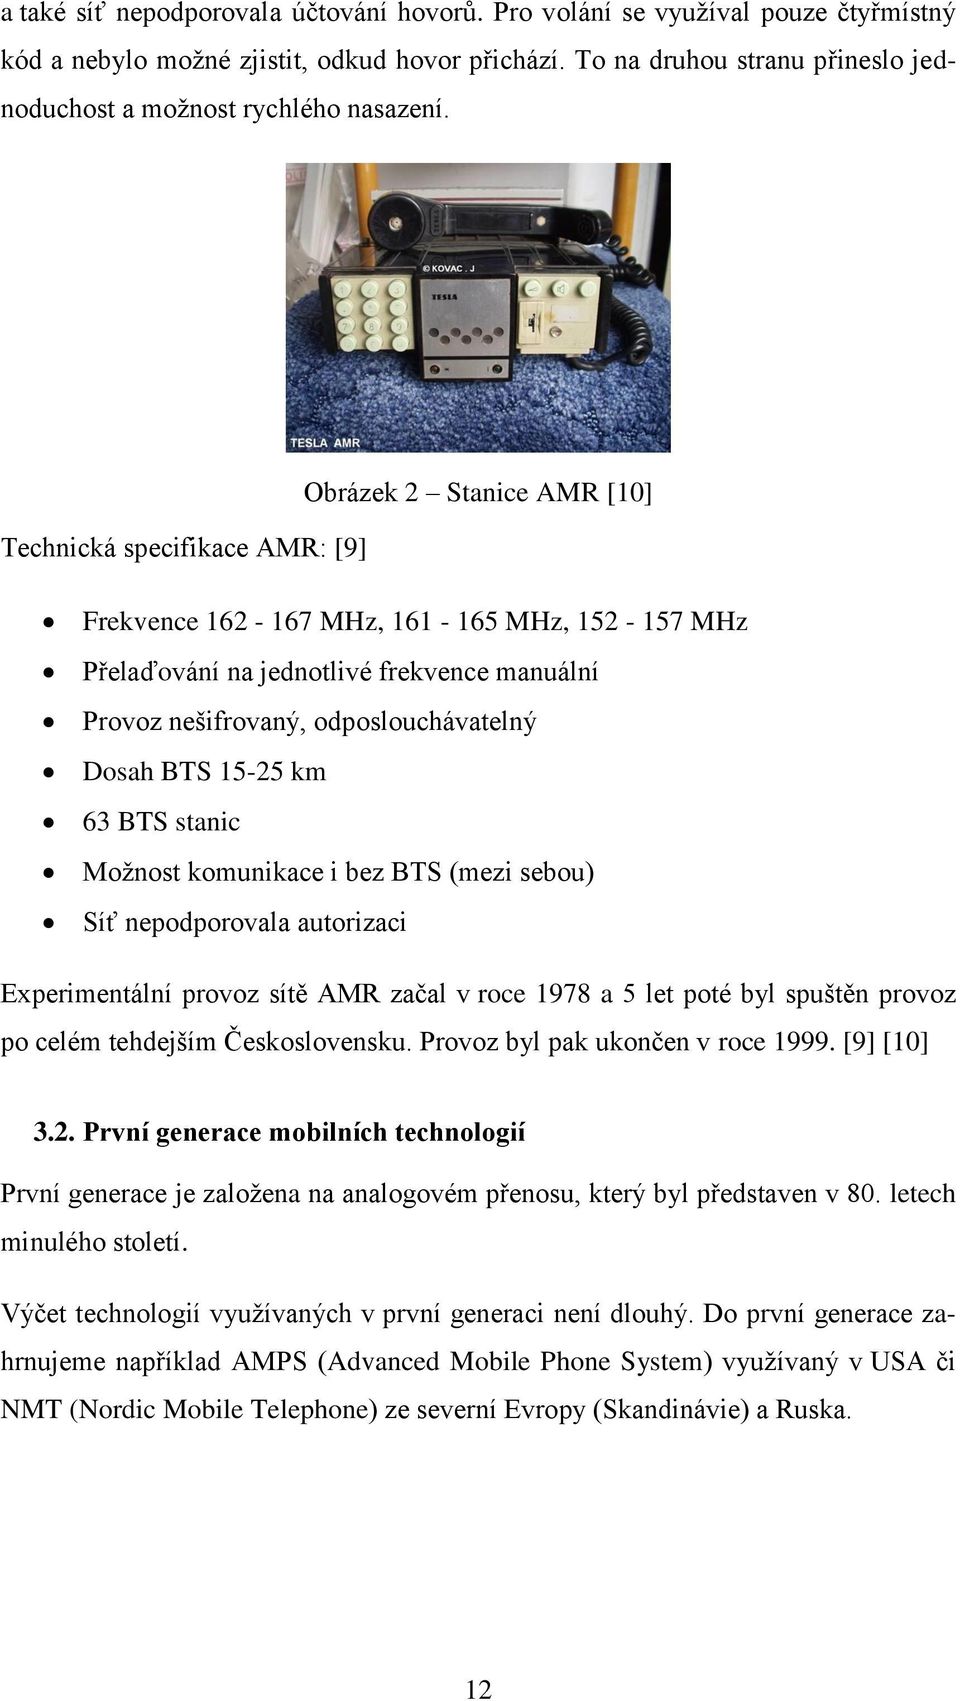 Obrázek 2 Stanice AMR [10] Technická specifikace AMR: [9] Frekvence 162-167 MHz, 161-165 MHz, 152-157 MHz Přelaďování na jednotlivé frekvence manuální Provoz nešifrovaný, odposlouchávatelný Dosah BTS